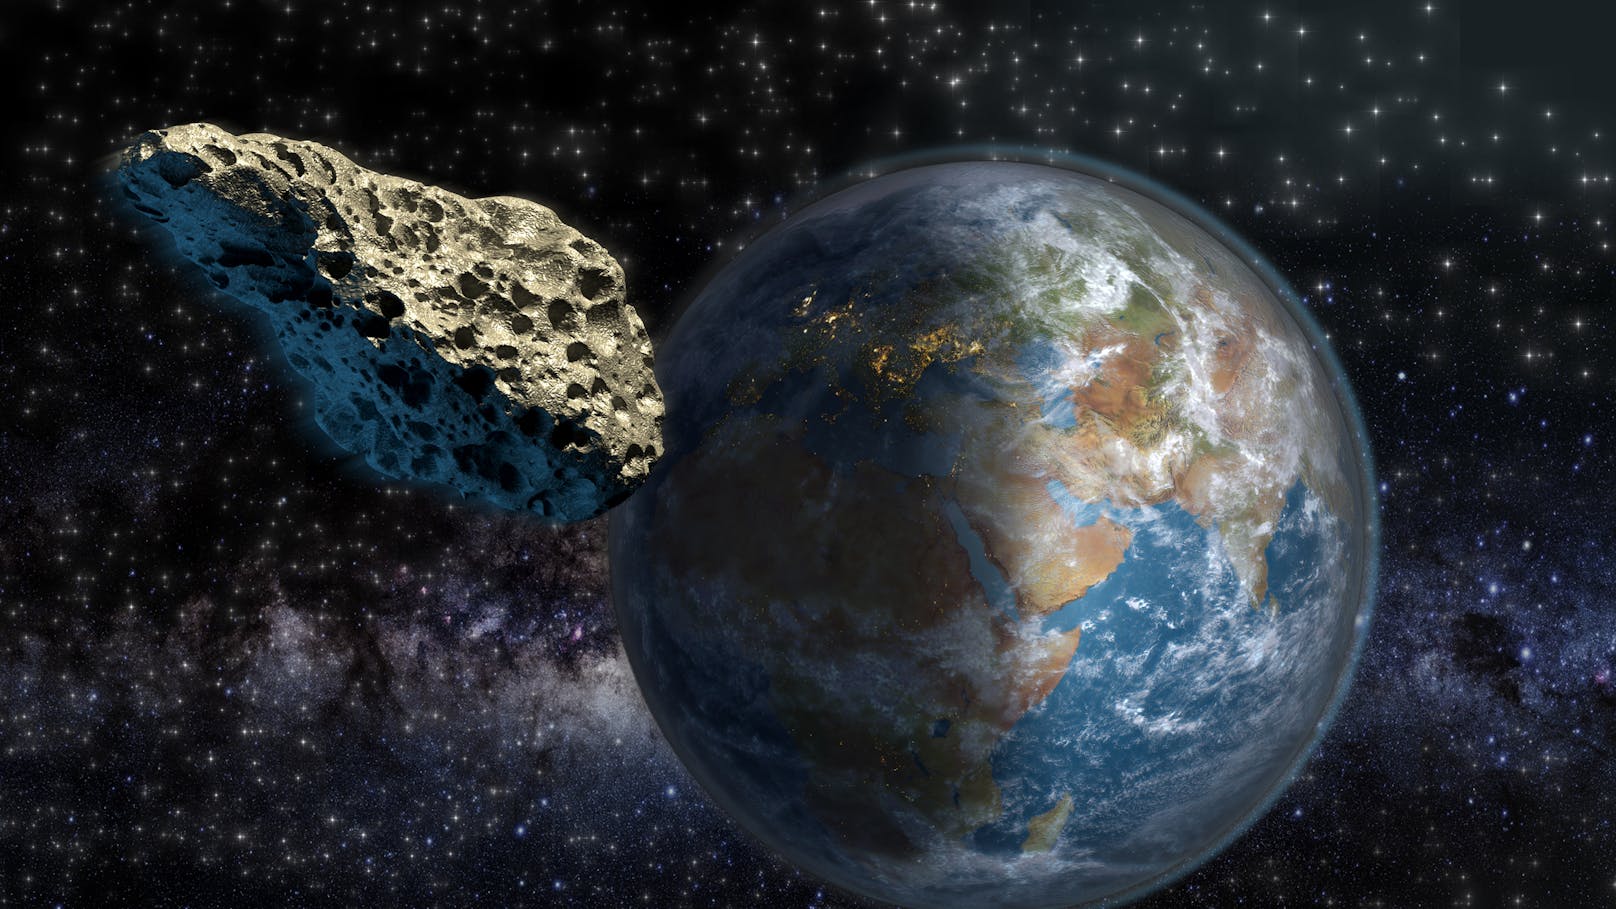 Ein Asteroid 2007 FF1 kommt der Erde am Freitag, dem 1. April,&nbsp;gefährlich nahe. Die&nbsp;NASA stuft ihn als "potenziell gefährlich" ein.